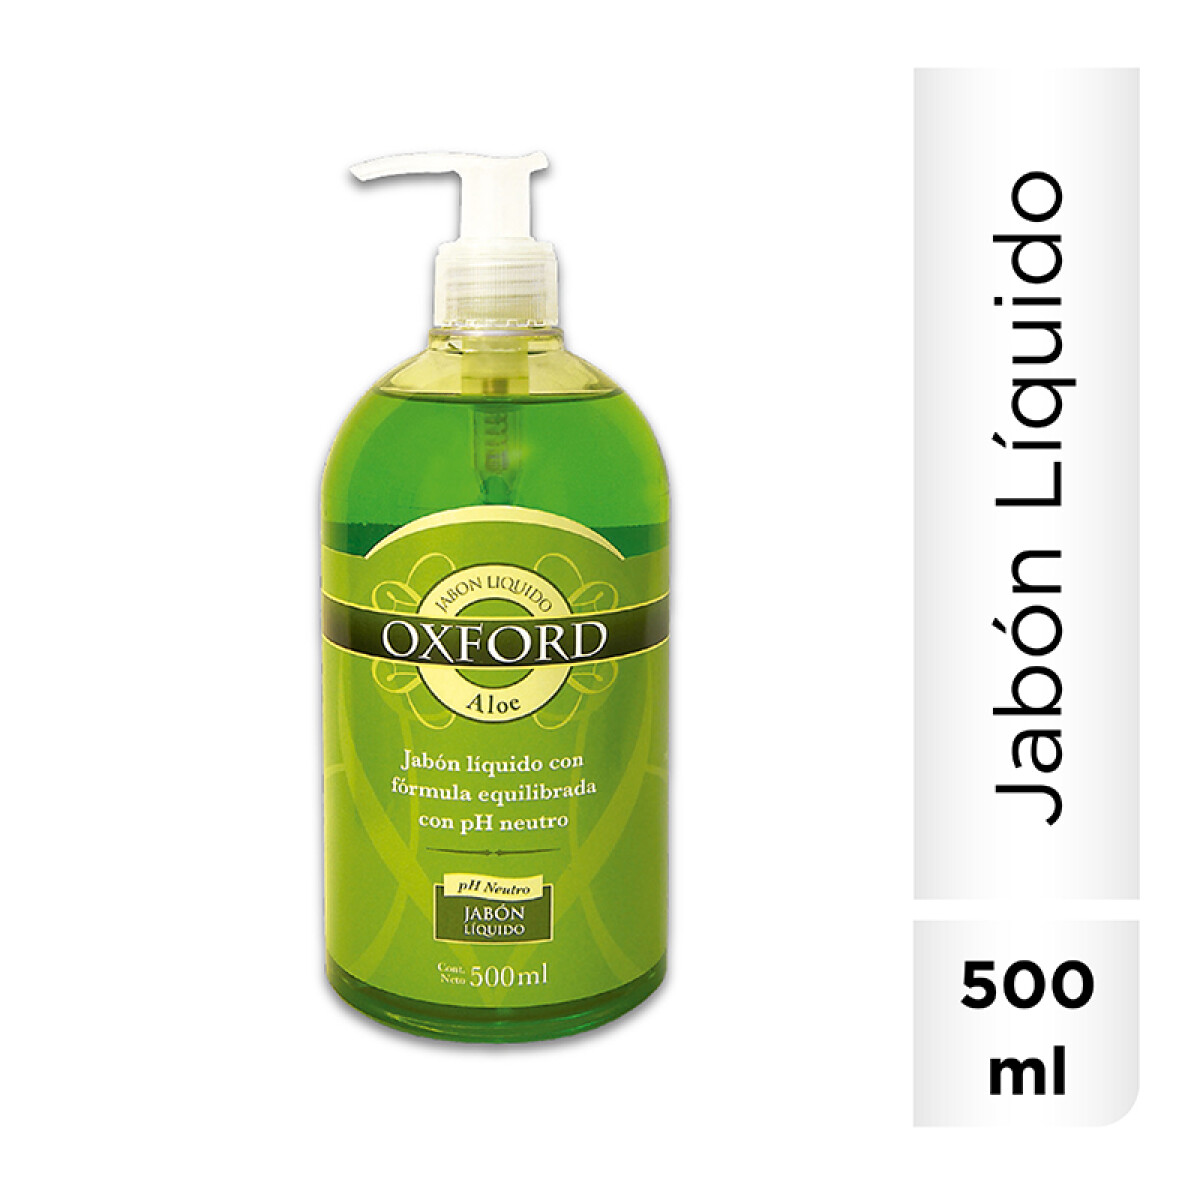 Oxford jabón líquido 500 ml - -Aloe 